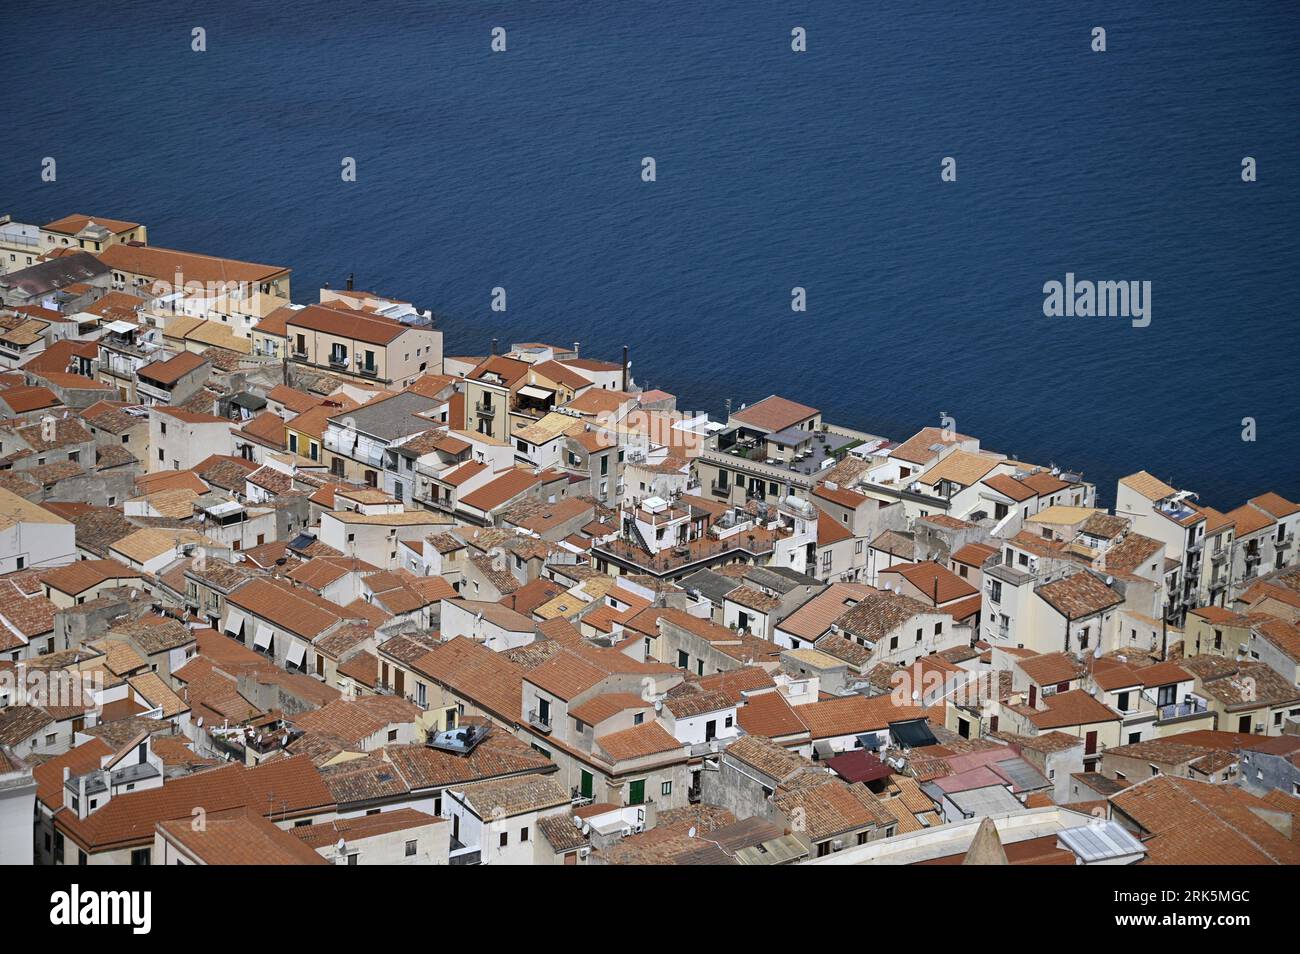 Paesaggio con vista panoramica di Cefalù, uno dei borghi più belli e pittoreschi della costa settentrionale della Sicilia, Italia. Foto Stock